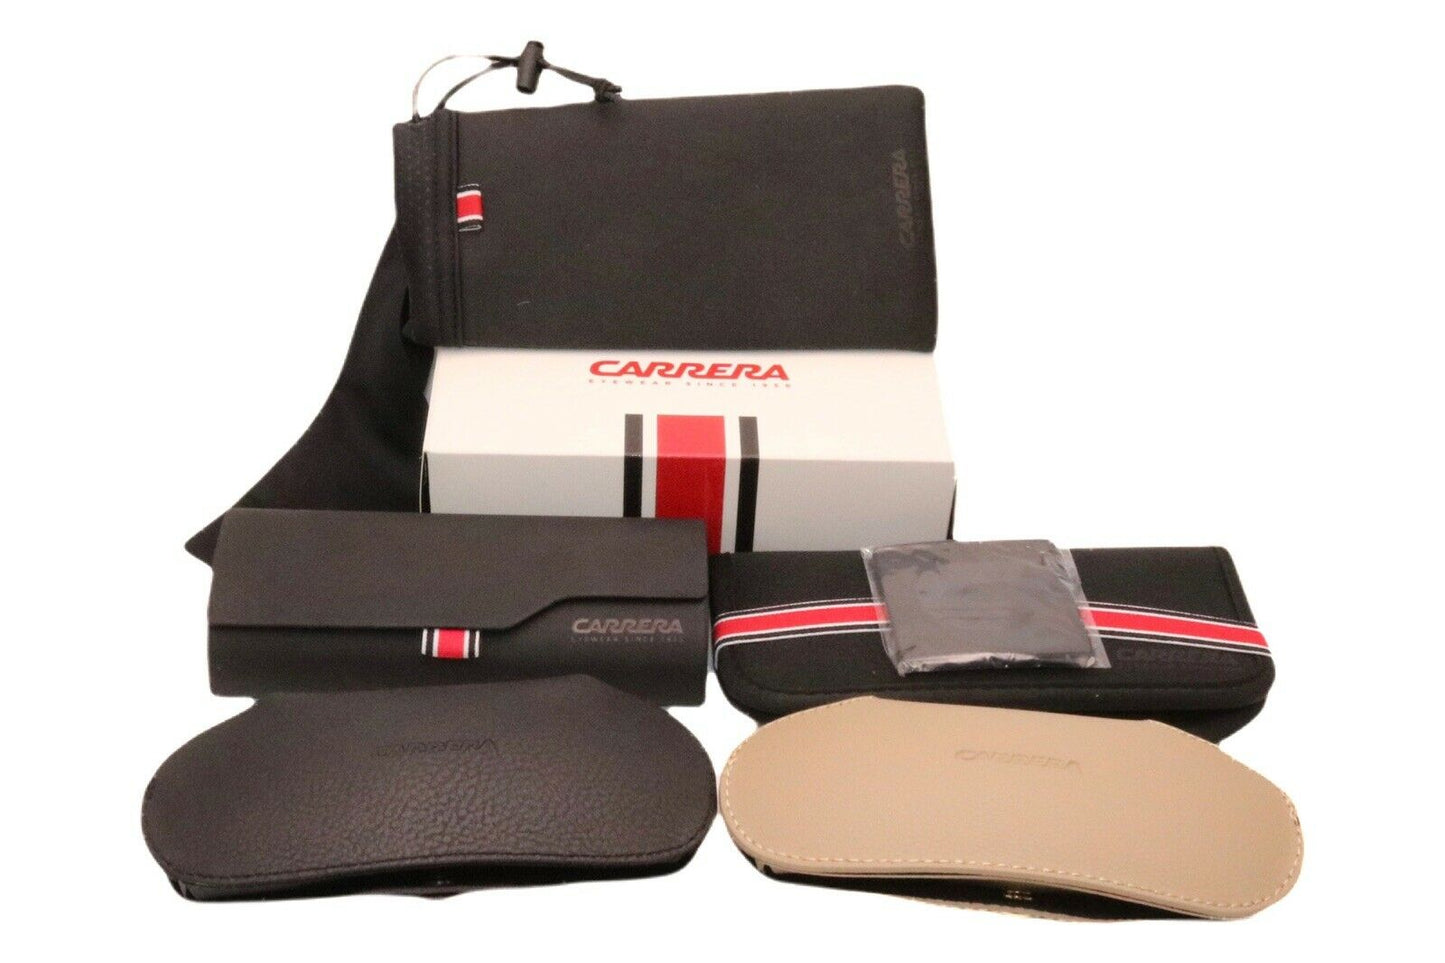 Carrera CARRERA 1058/S-080S 9O 63mm New Sunglasses